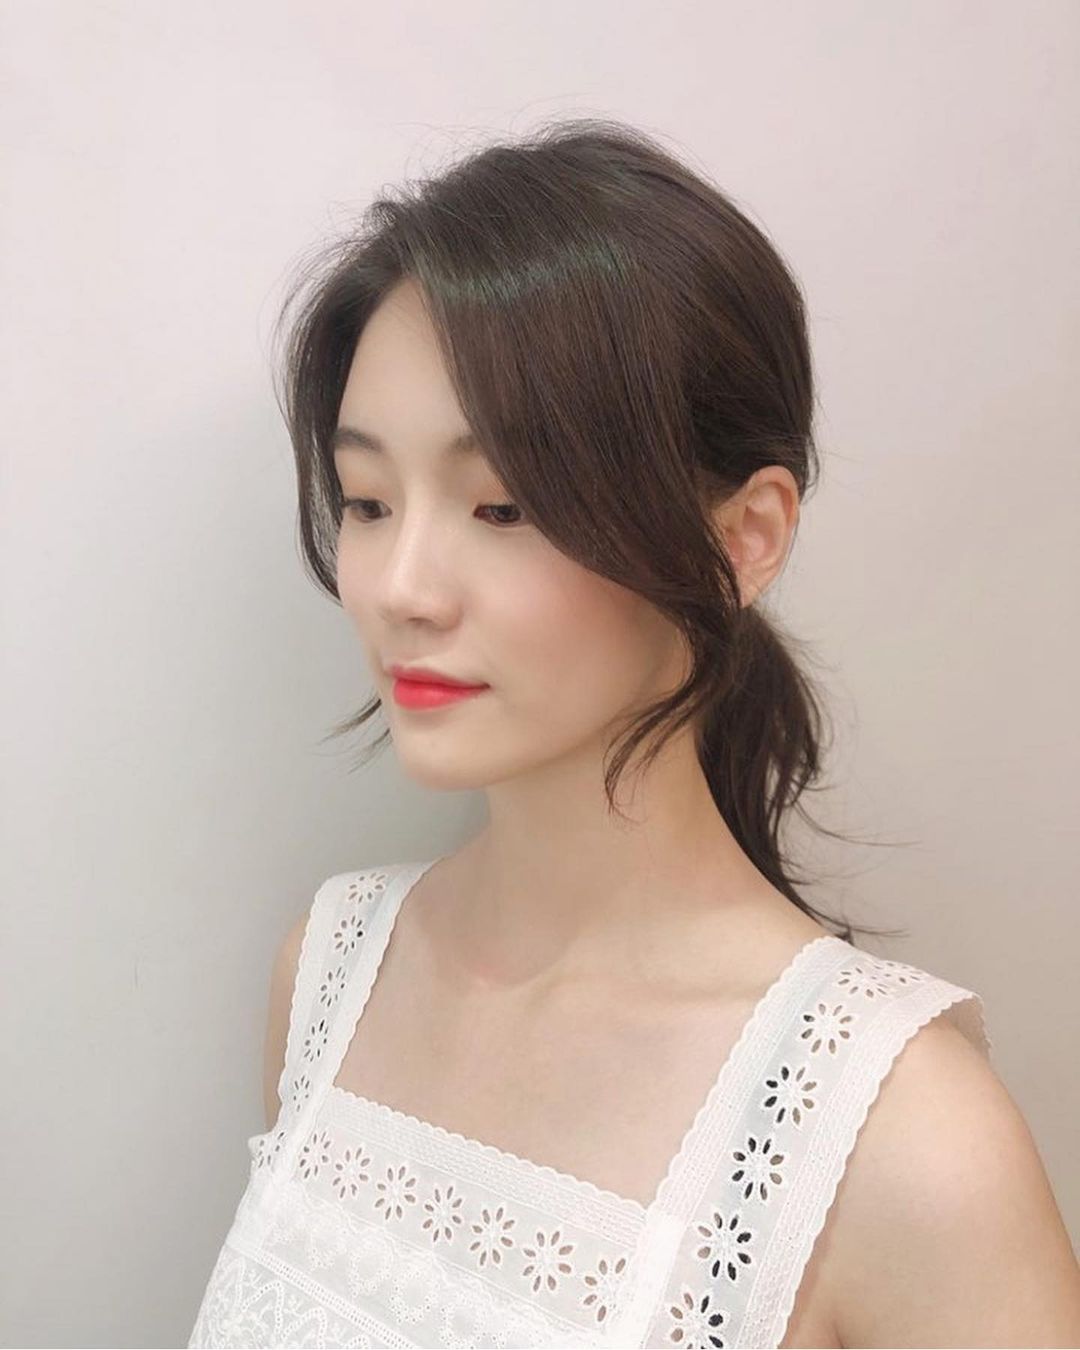 Hair stylist người Hàn bật mí chiêu buộc tóc thấp tạo góc nghiêng thần thánh, giúp mặt thon gọn mà gái Hàn mới biết - Ảnh 7.